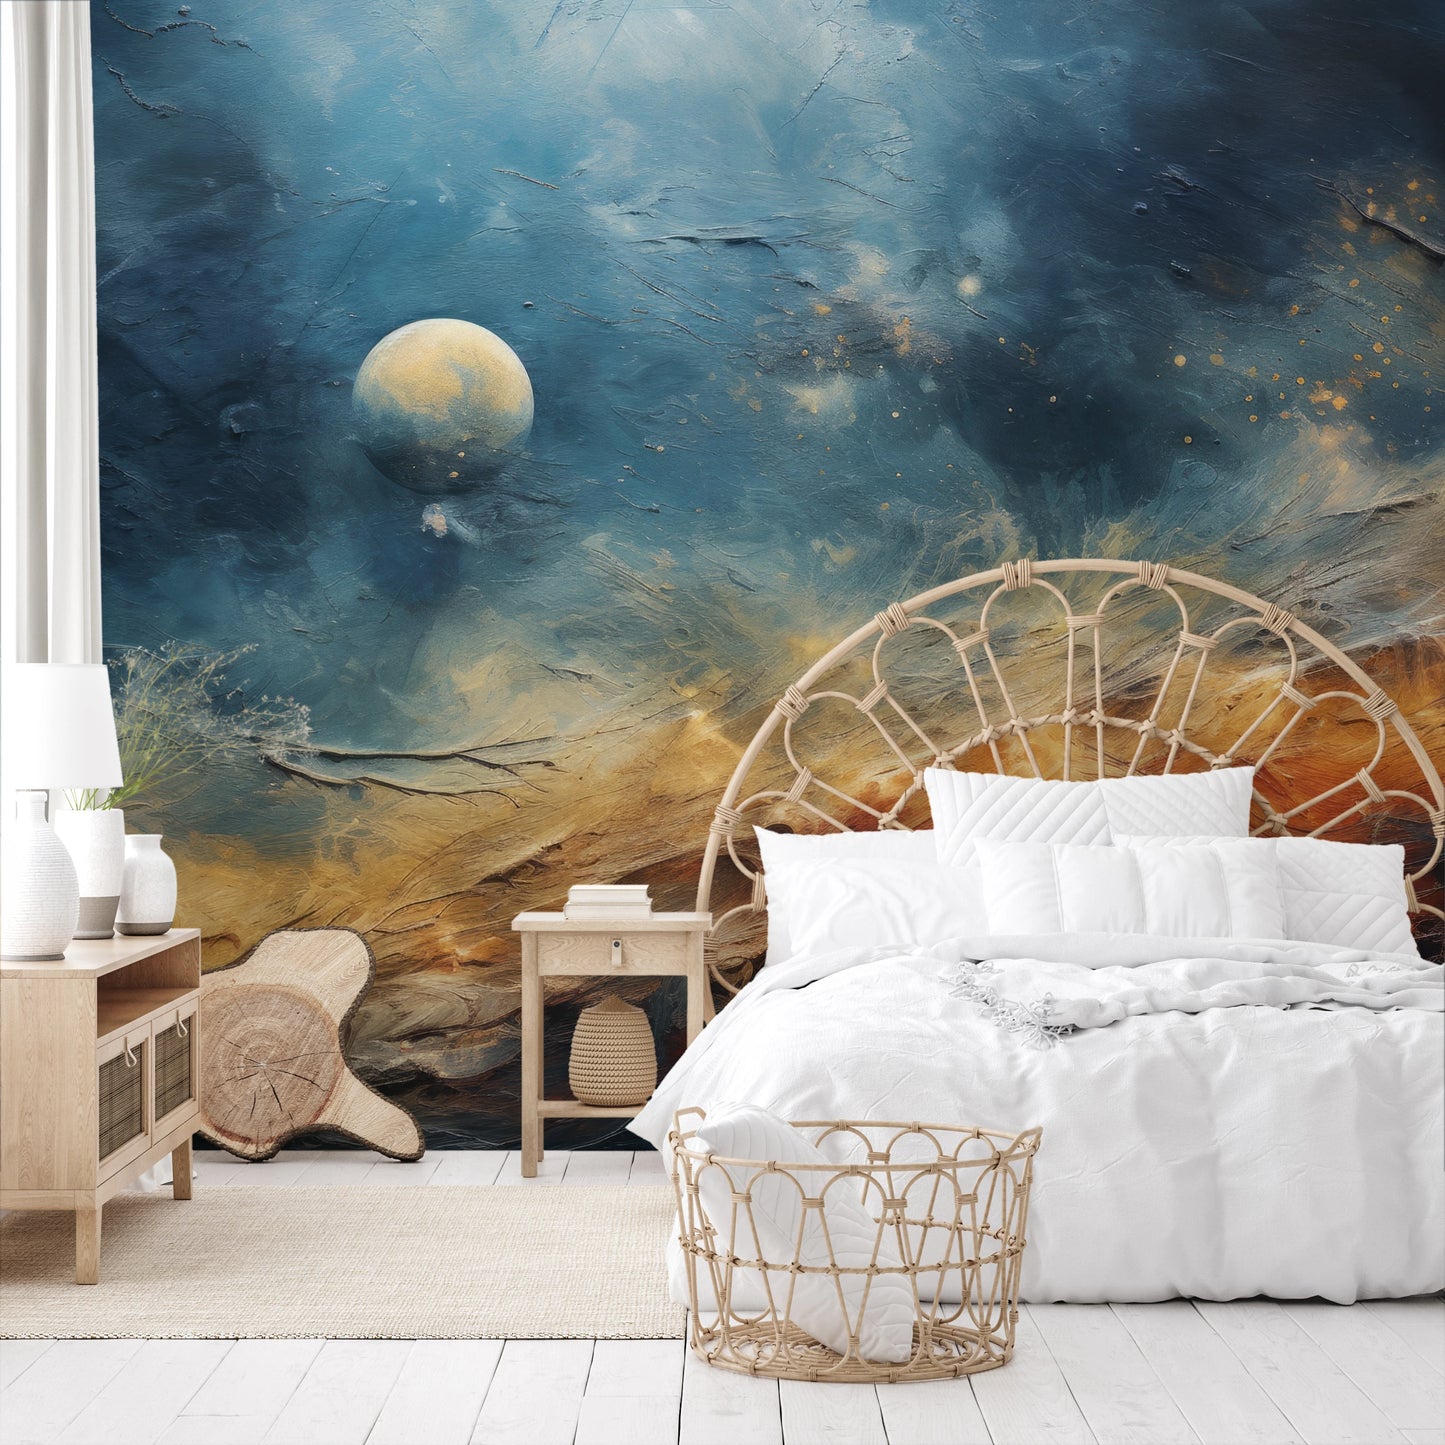 Fototapeta malowana o nazwie Celestial Harmony pokazana w aranżacji wnętrza.